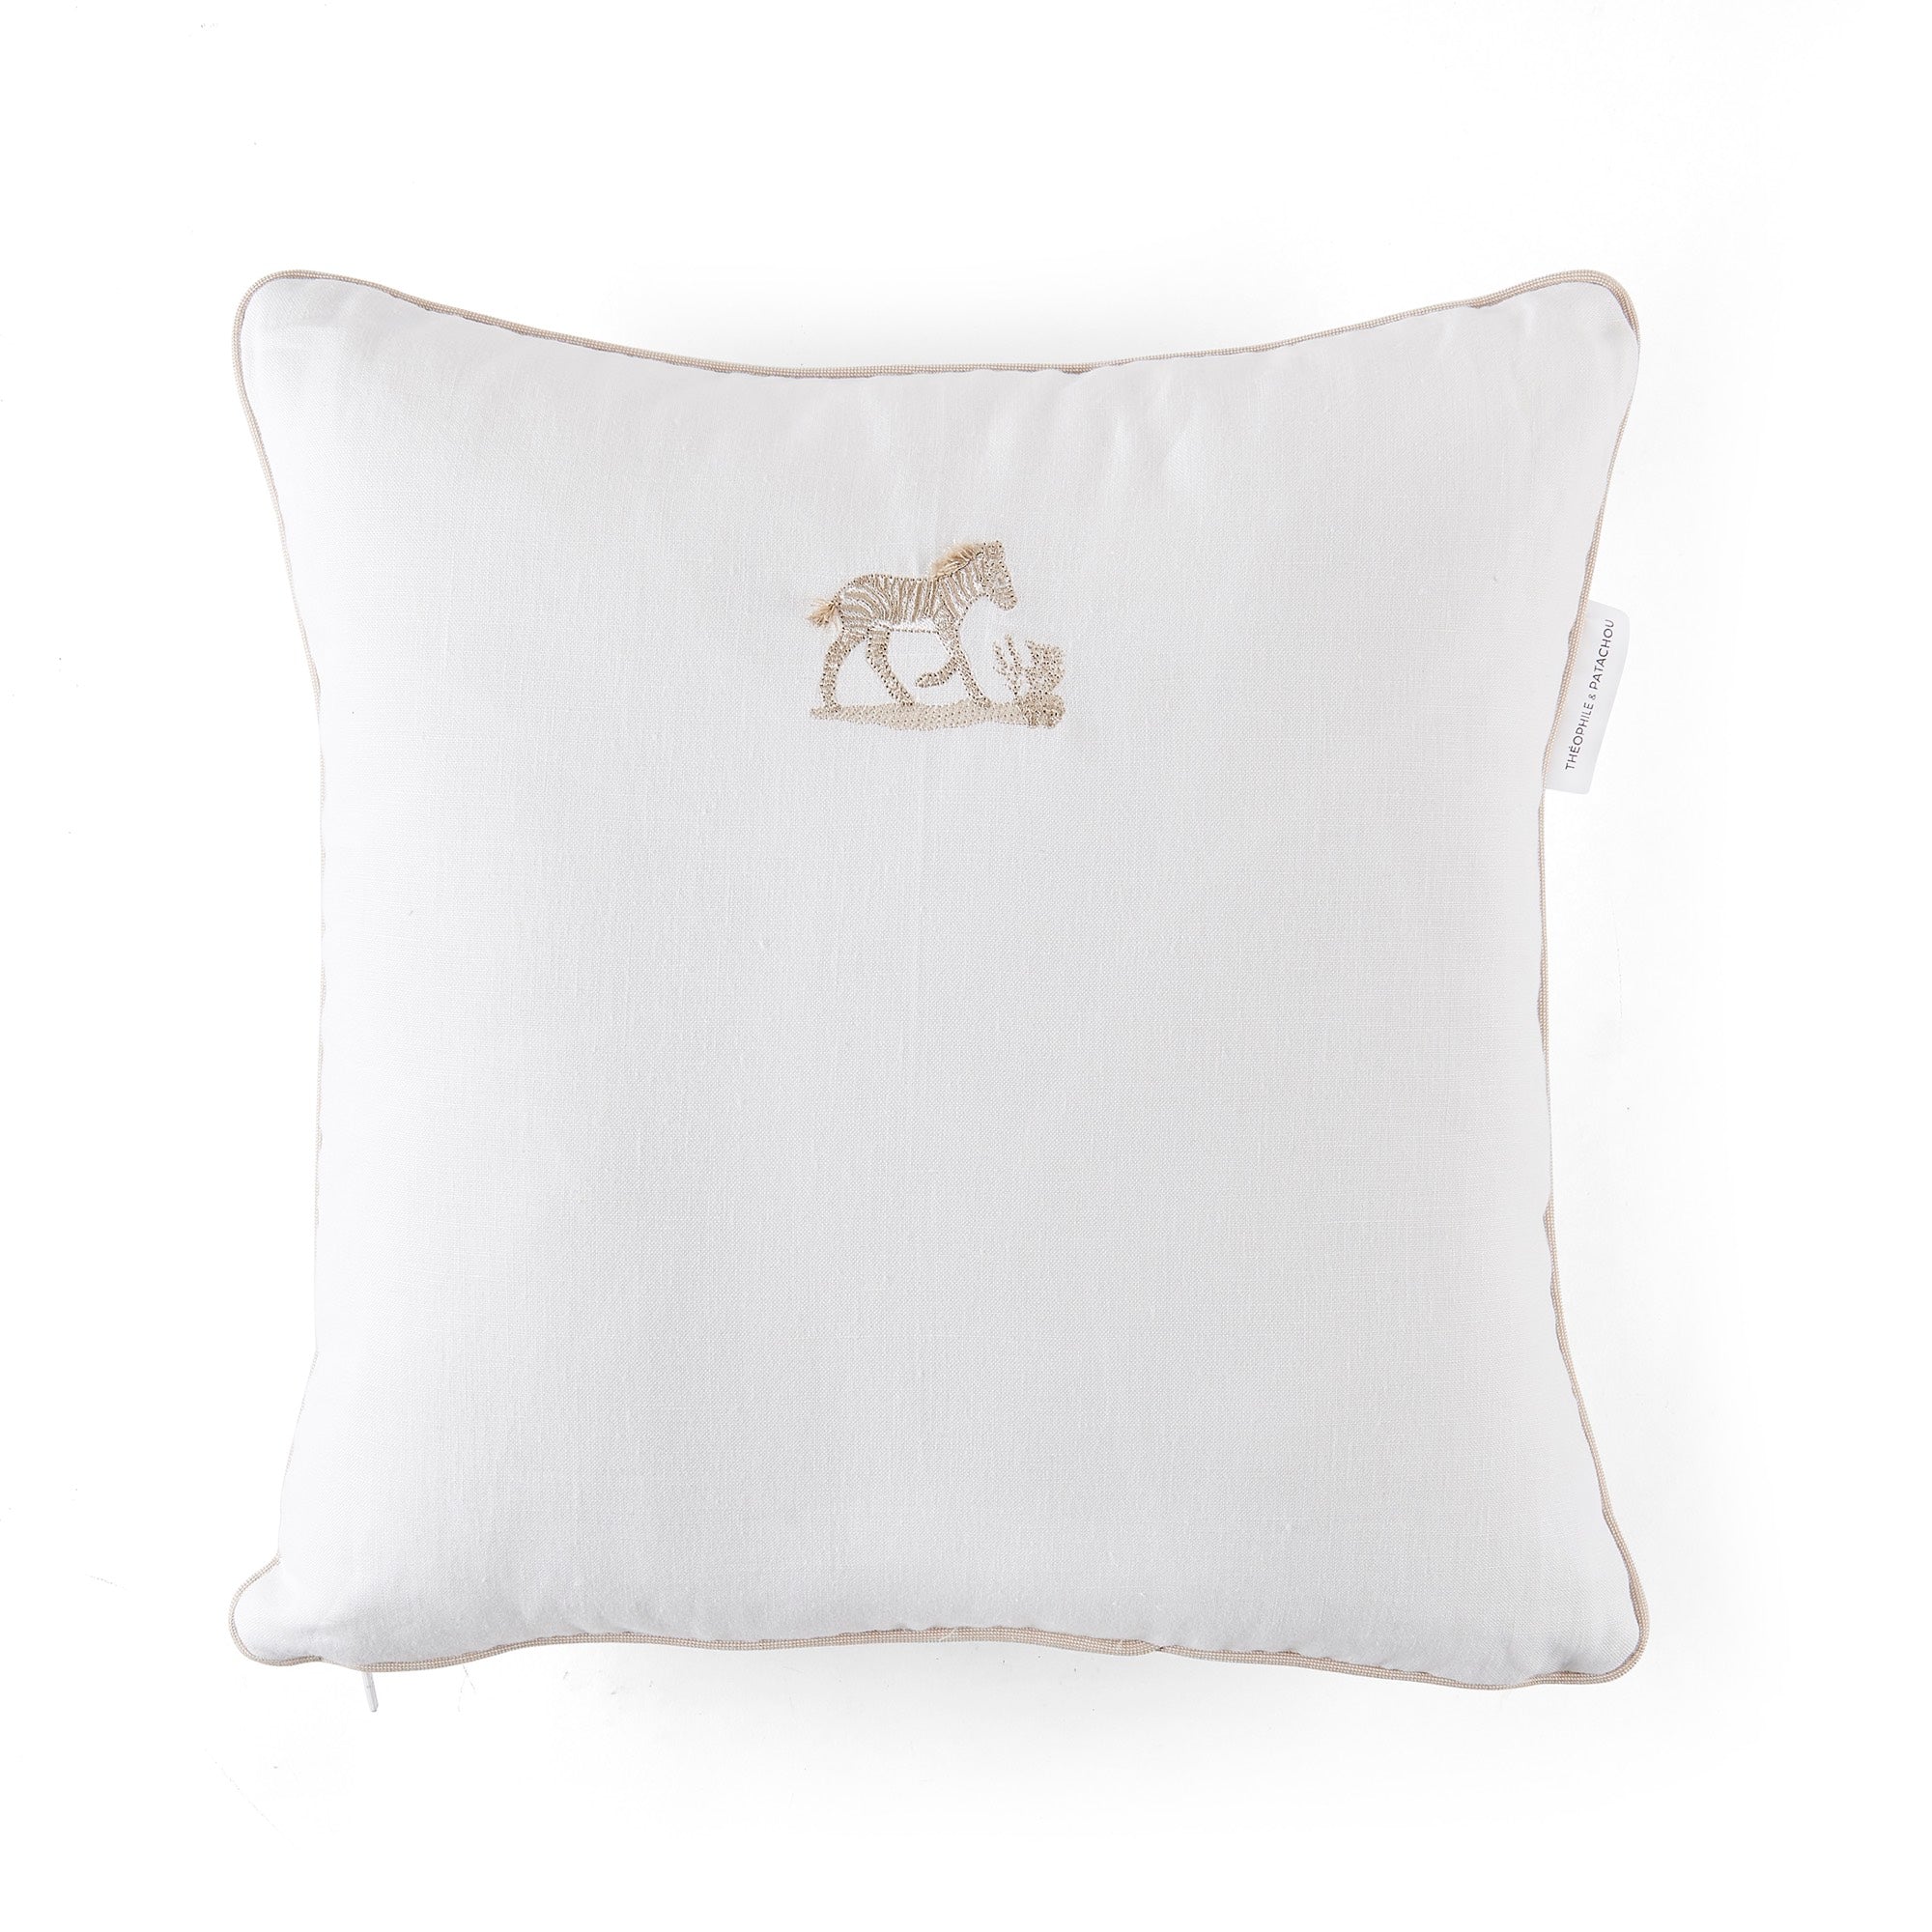 Theophile & Patachou Embroidered Cushion - Safari